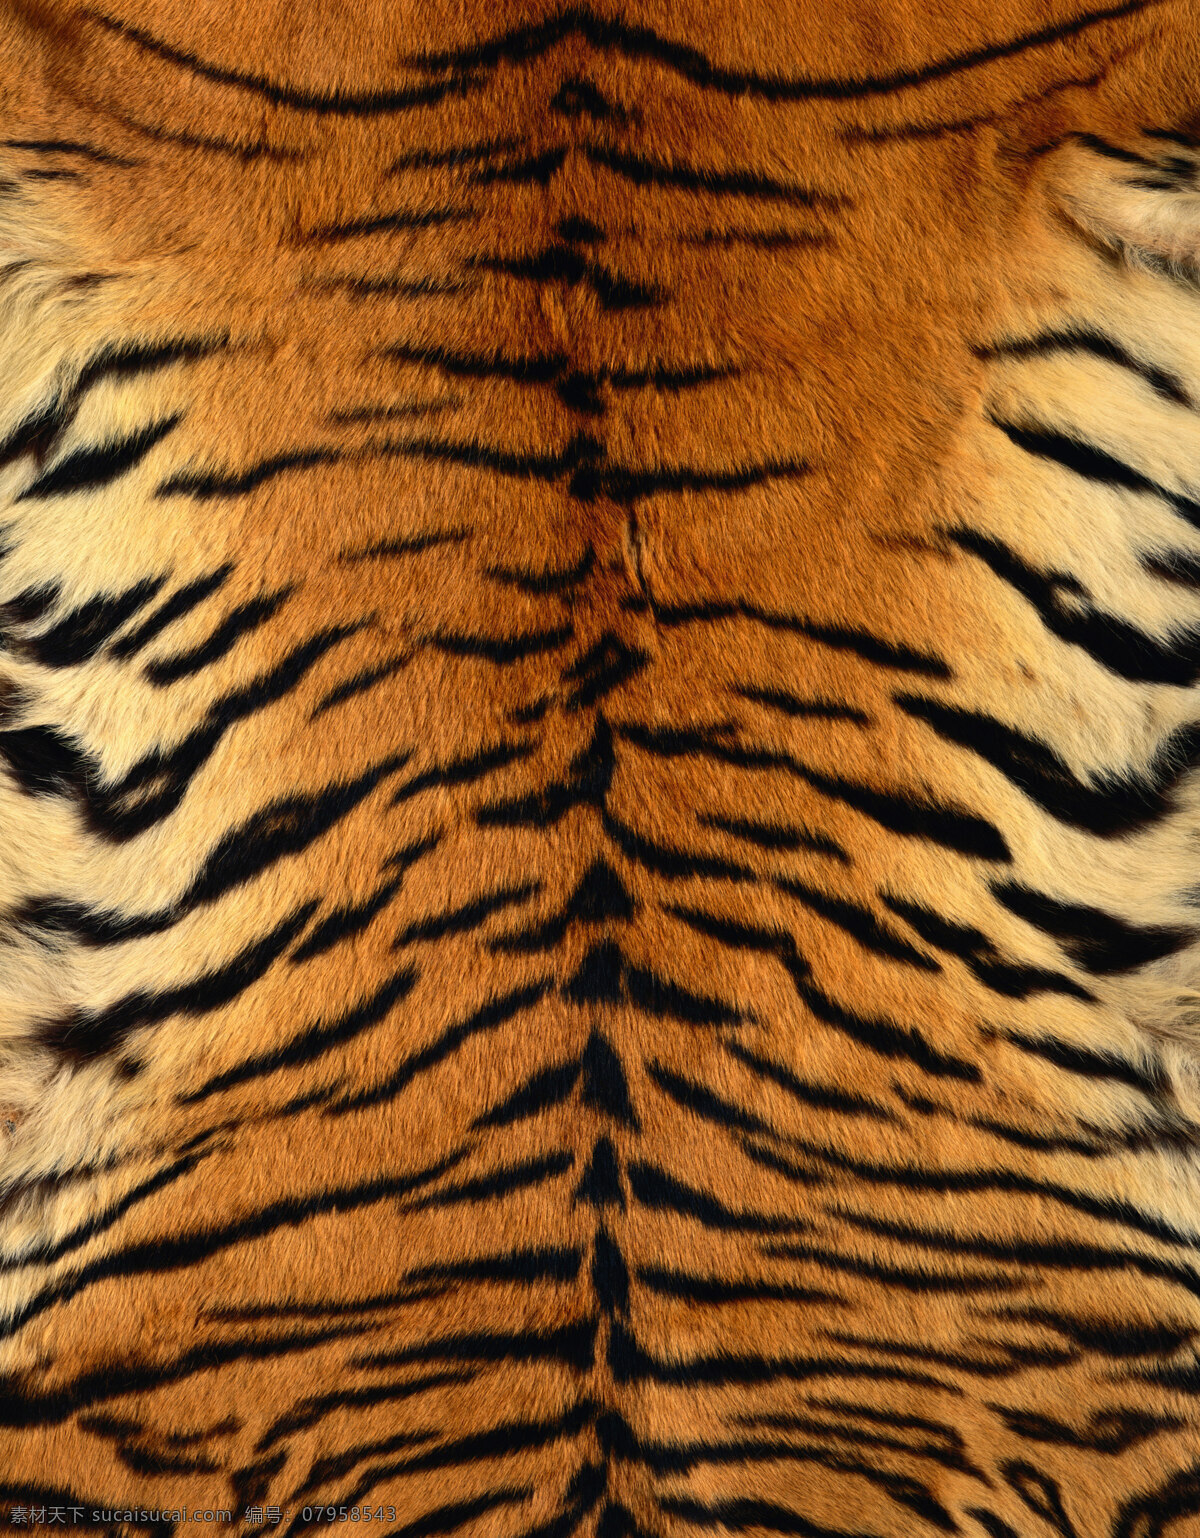 虎纹 生物世界 野生动物 动物皮毛 摄影图库 300